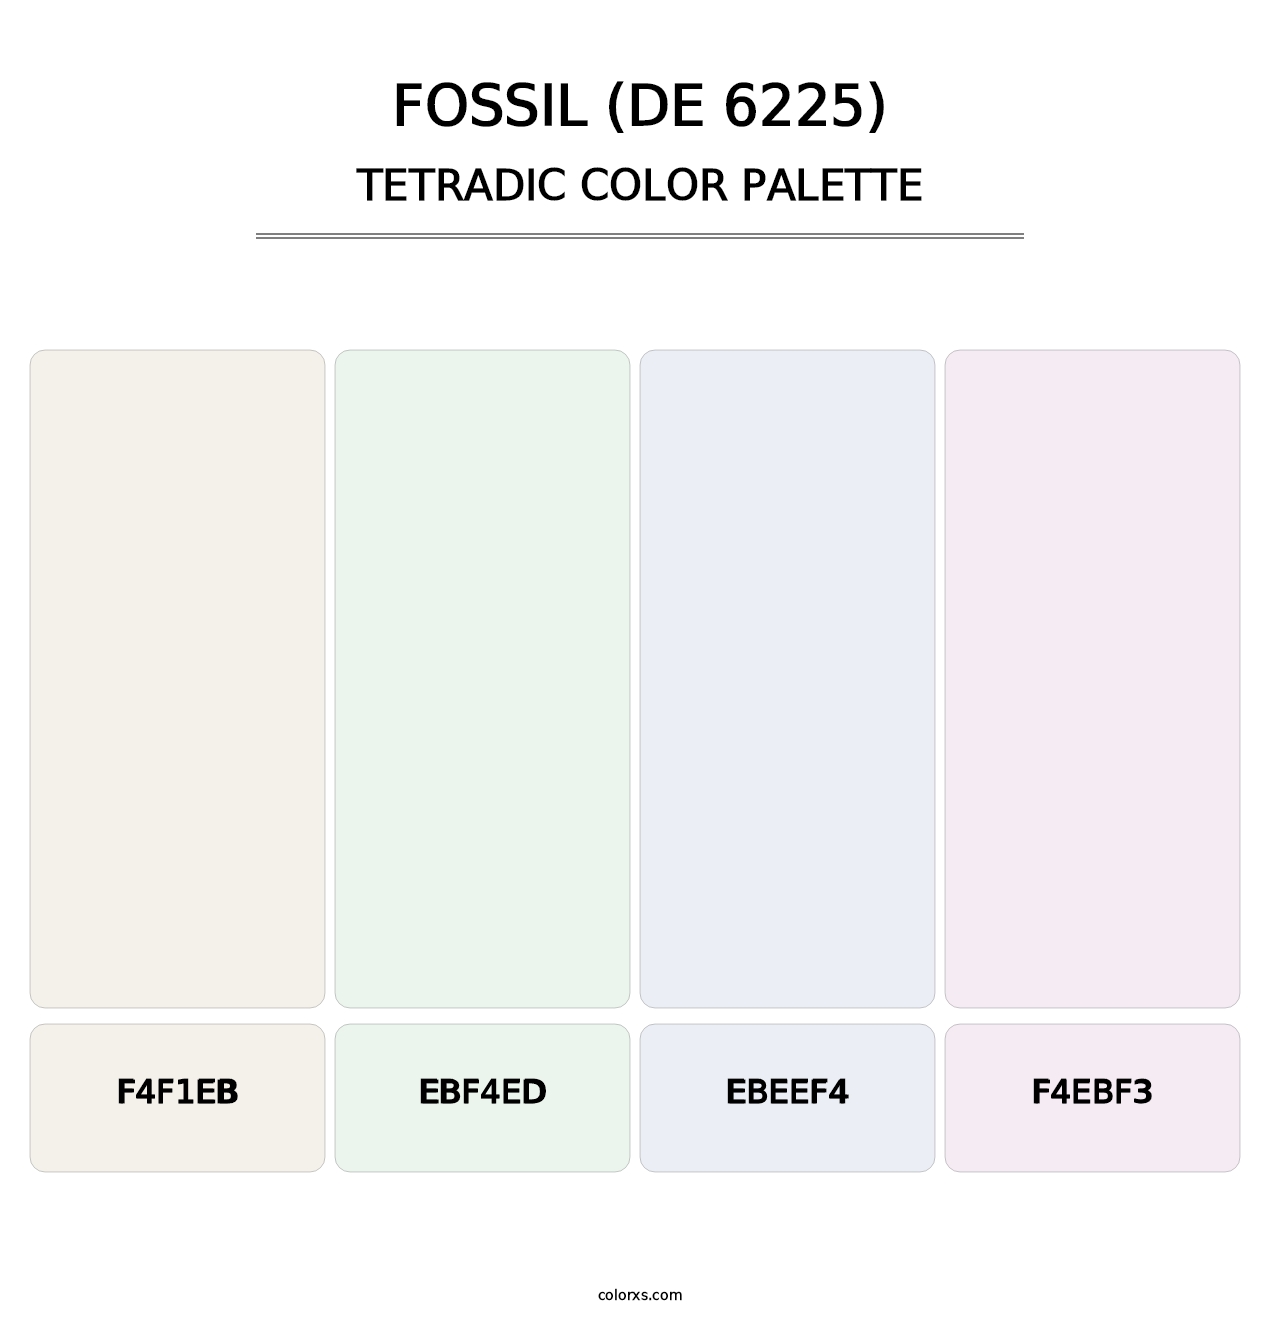 Fossil (DE 6225) - Tetradic Color Palette